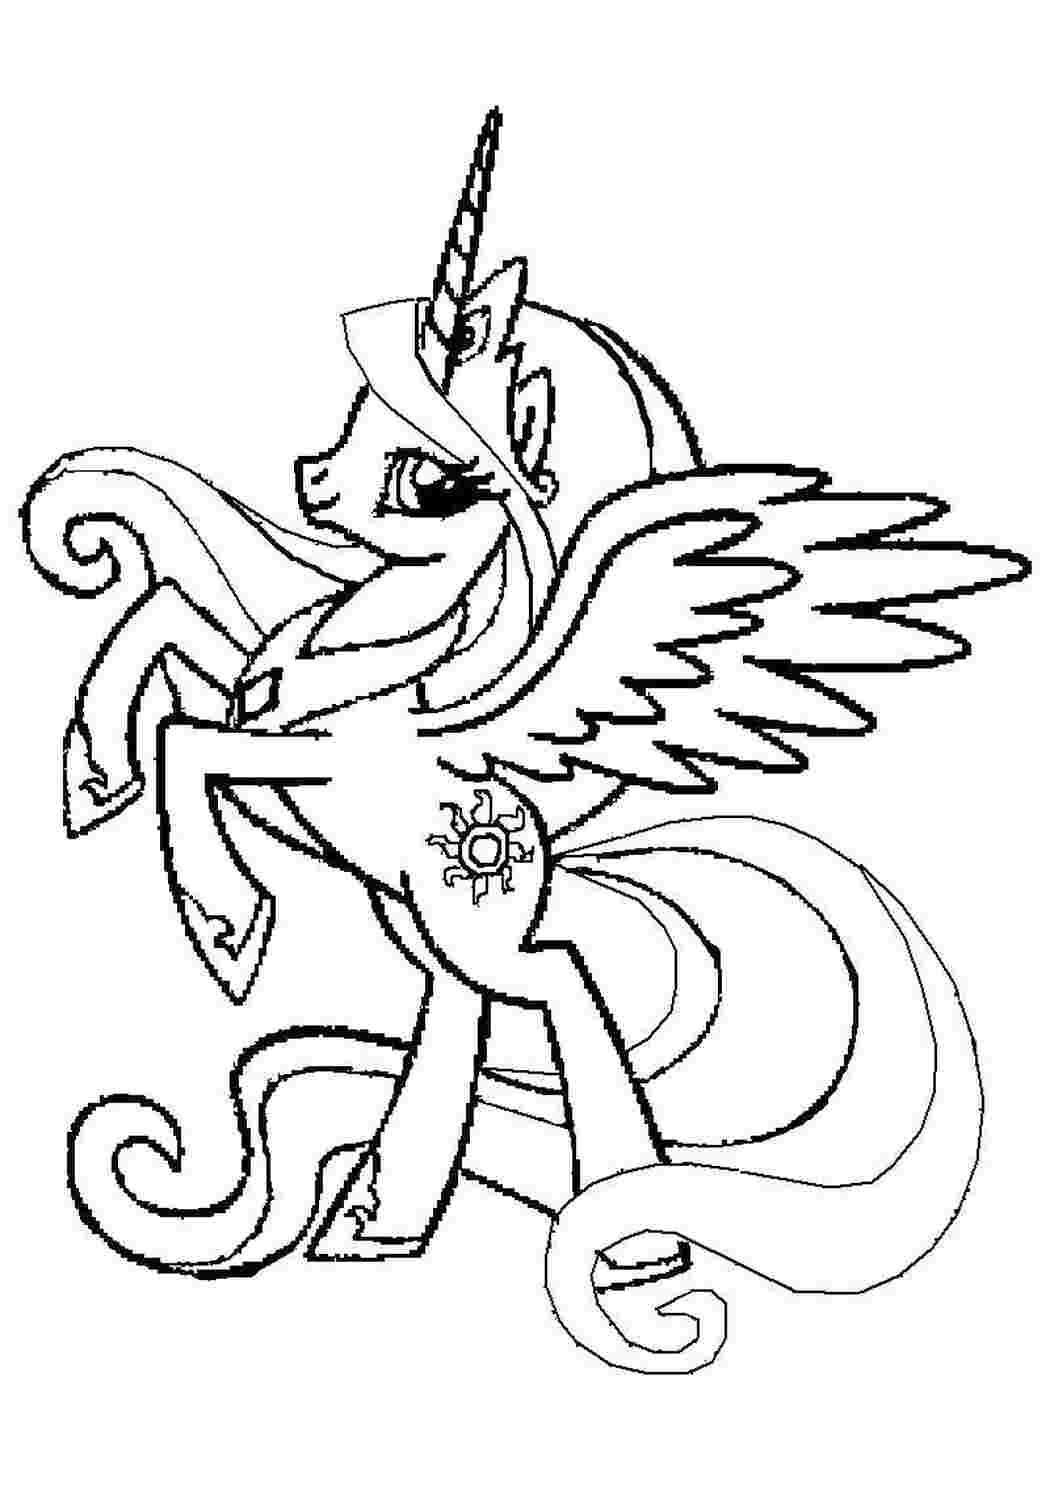 Как нарисовать крылья пони и сделать оригинальный рисунок из опилок